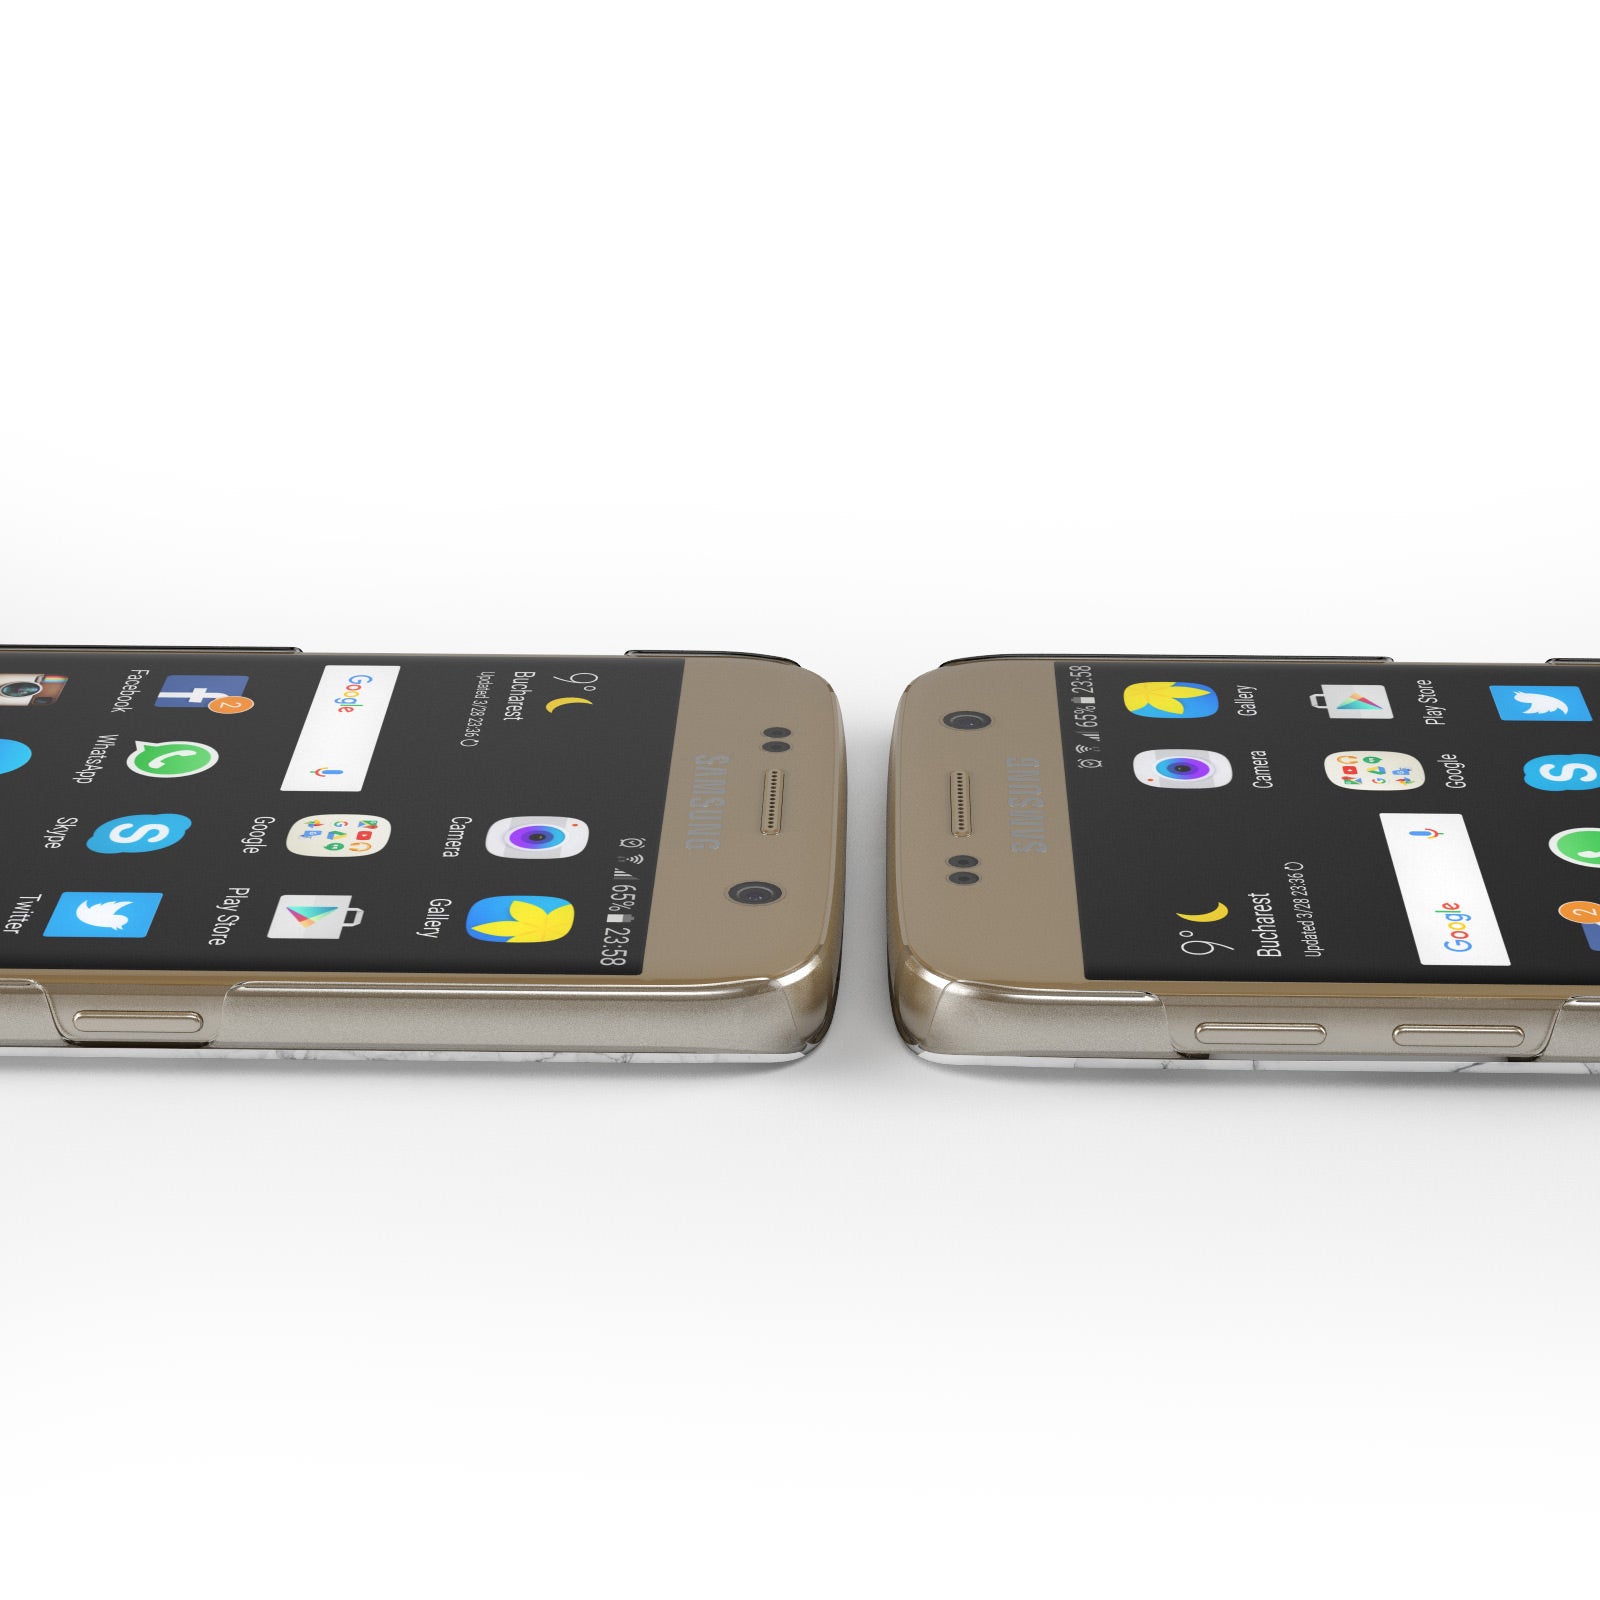 Marble White Carrara Green Samsung Galaxy Case Ports Cutout